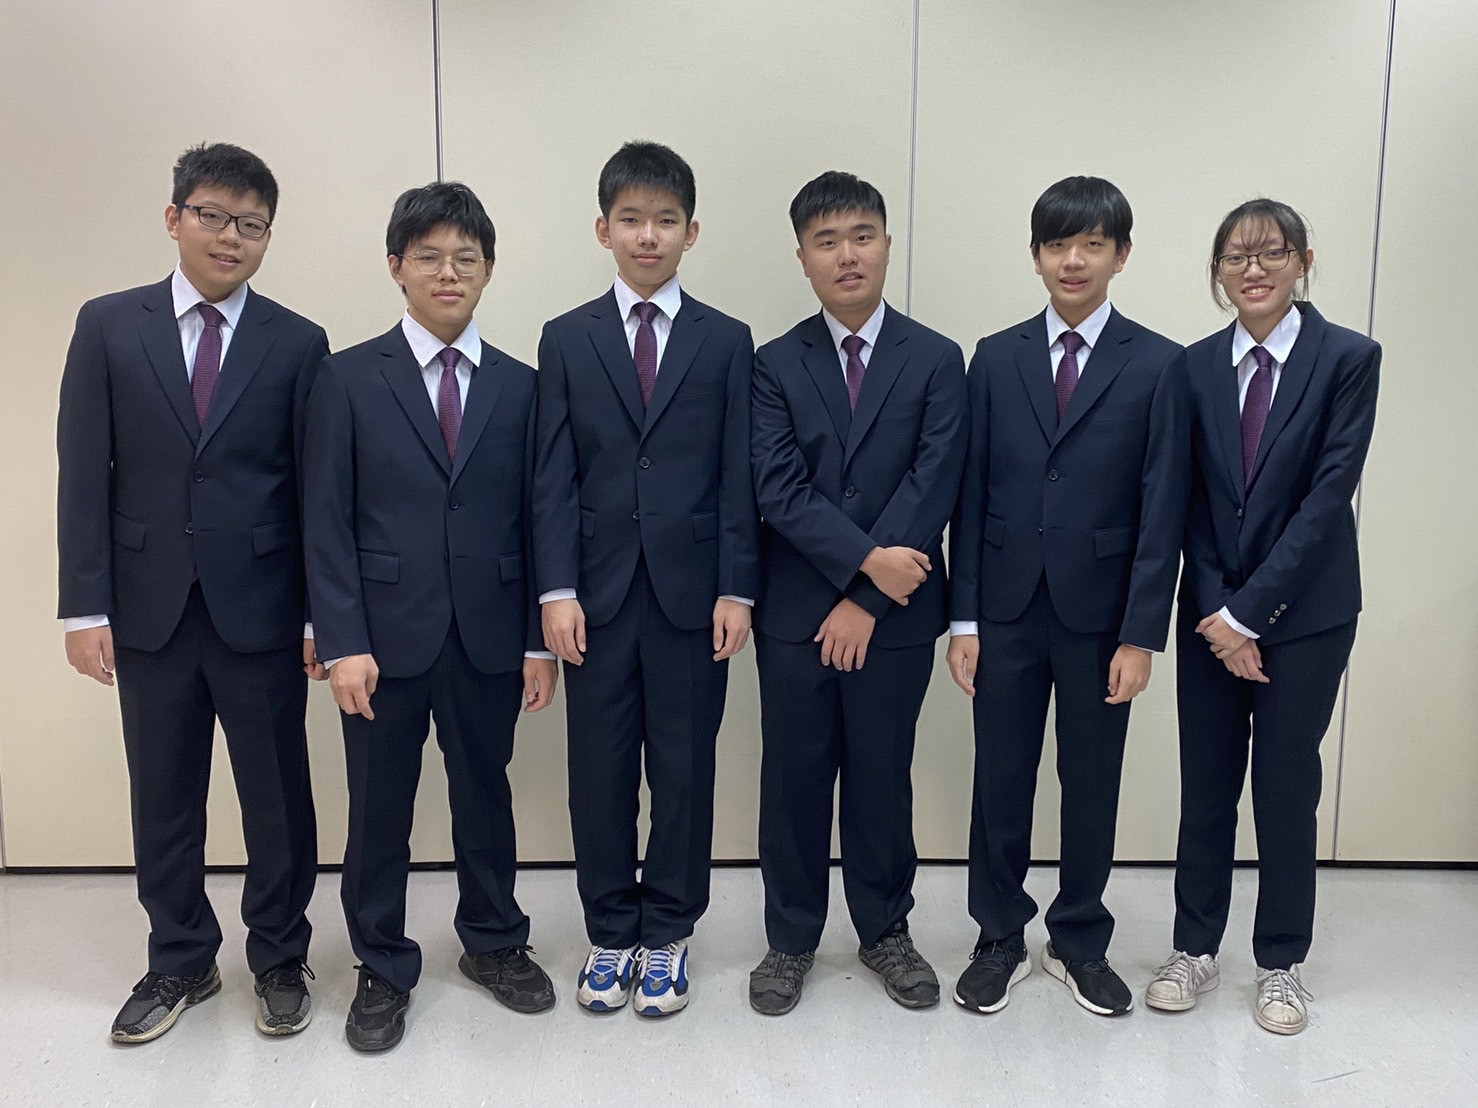 Tham dự Olympic và Khoa học kỹ thuật quốc tế năm 2021 lần này, đoàn thí sinh của Đài Loan có 6 học sinh đã giành 6 huy chương vàng. (Nguồn ảnh: Bộ Giáo dục Đài Loan)